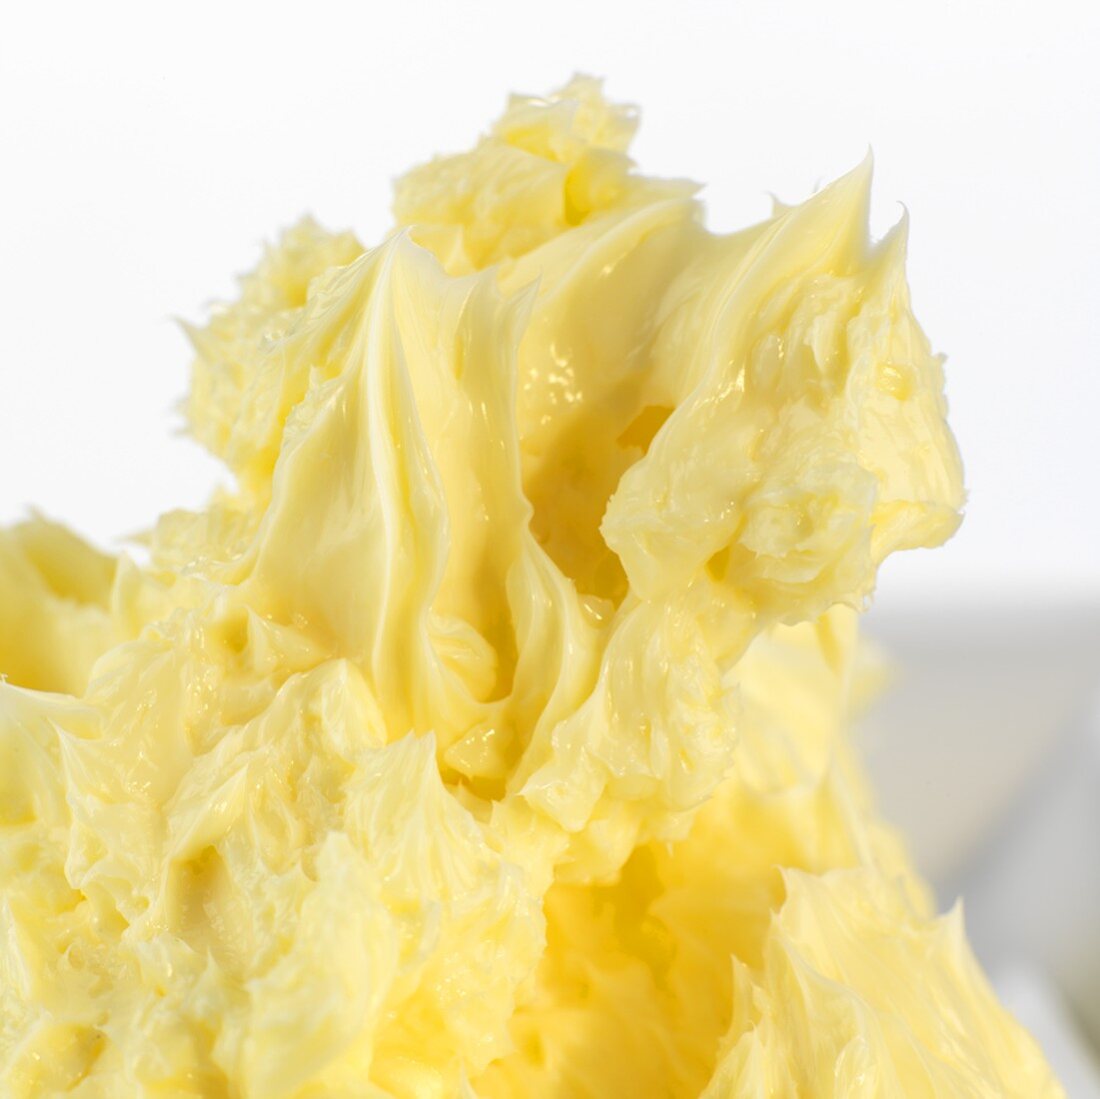 Soft butter (close-up)